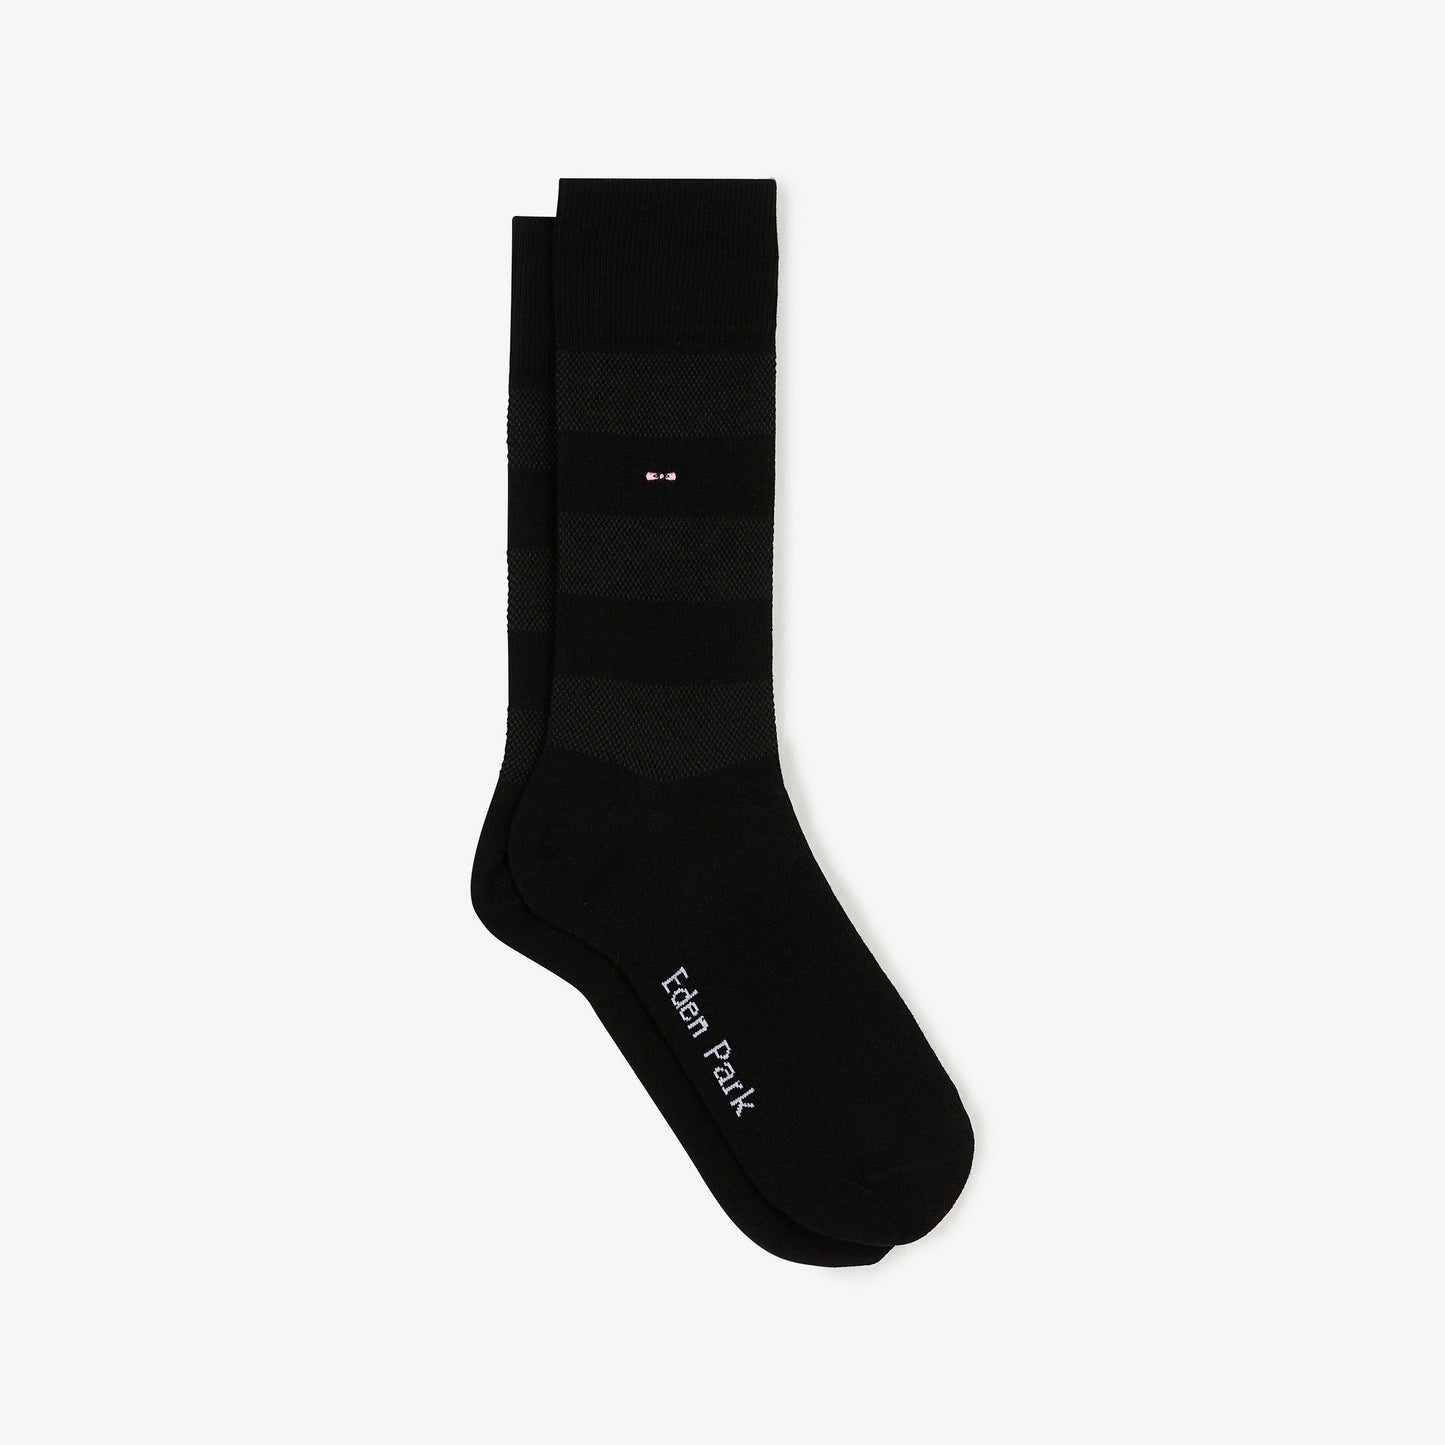 Paire de chaussettes noires rayées unies - Image 1